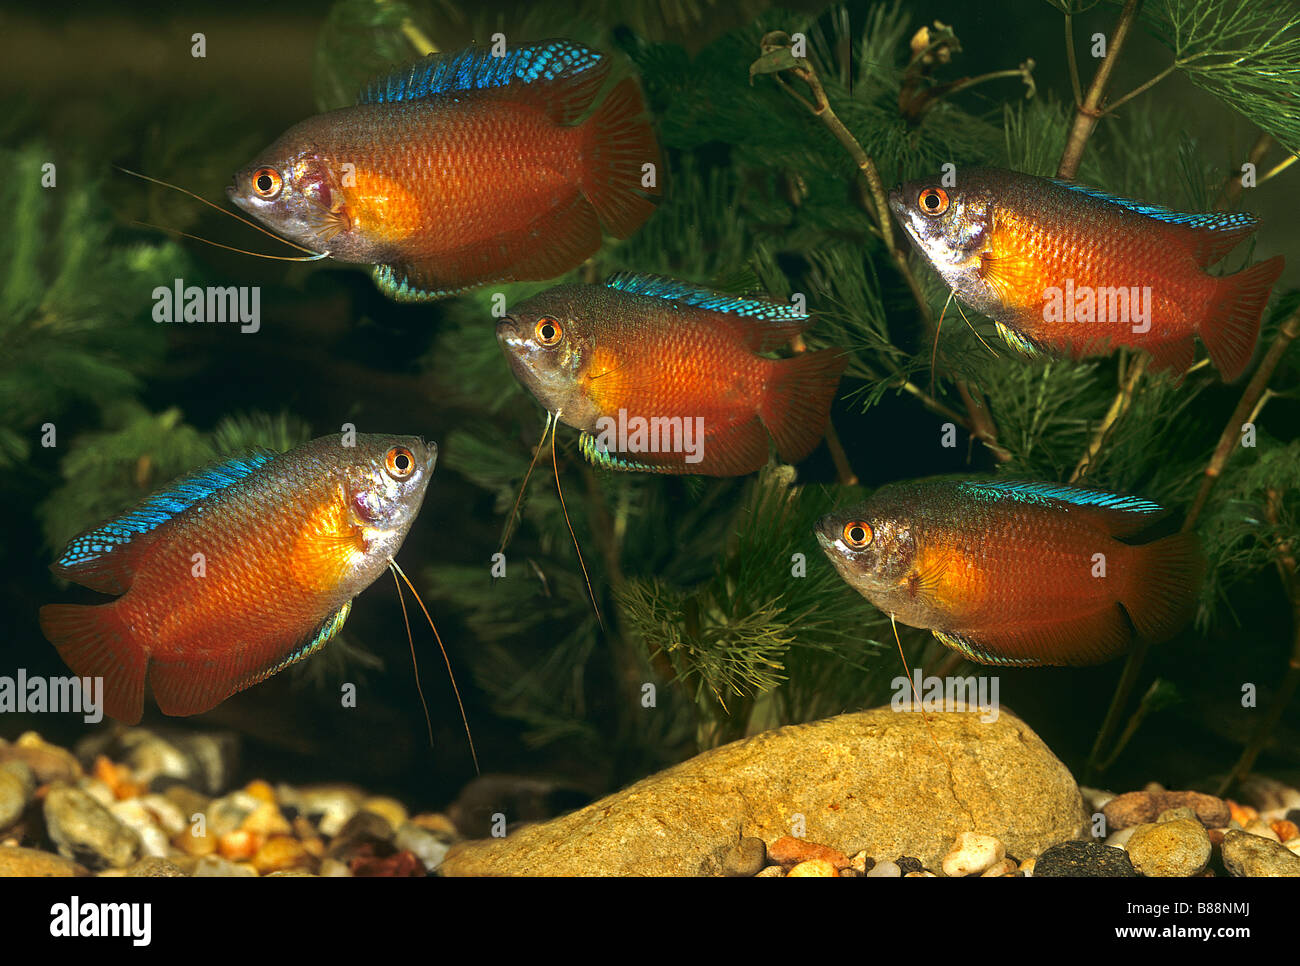 five dwarf gouramis in Aquarium / Colisa lalia Stock Photo